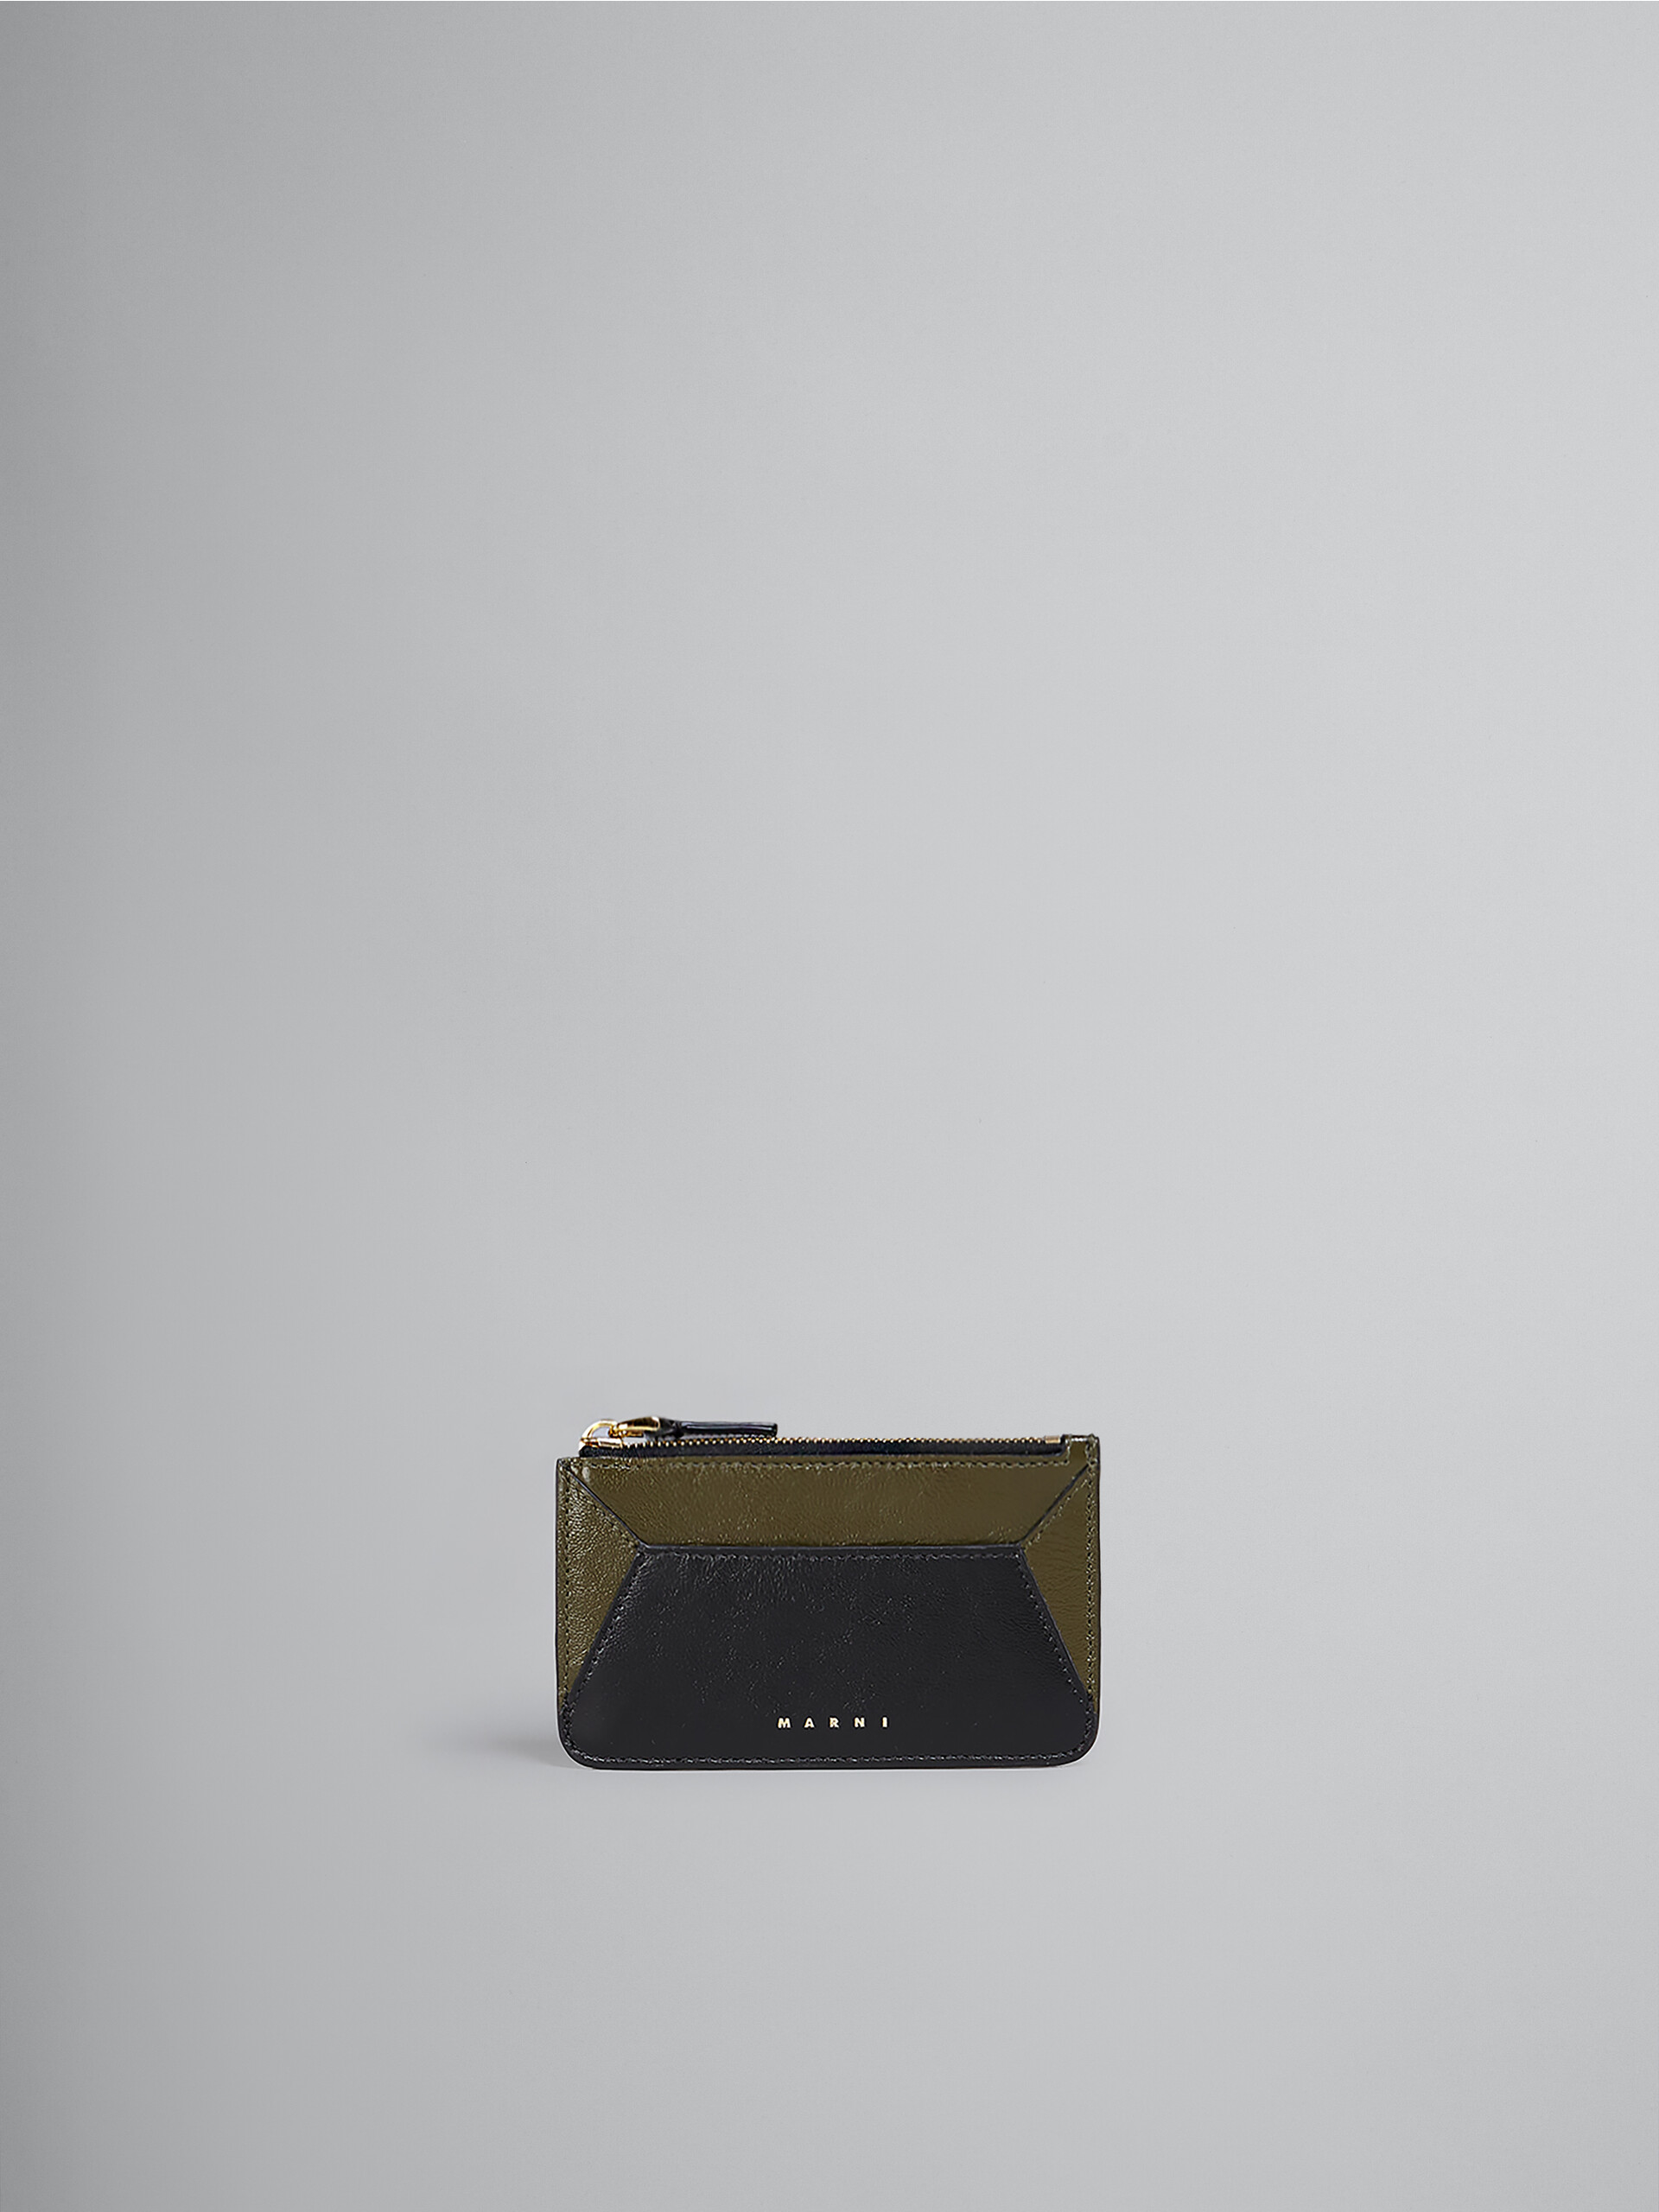 MARNIで人気のお財布は、レザー製カードケース